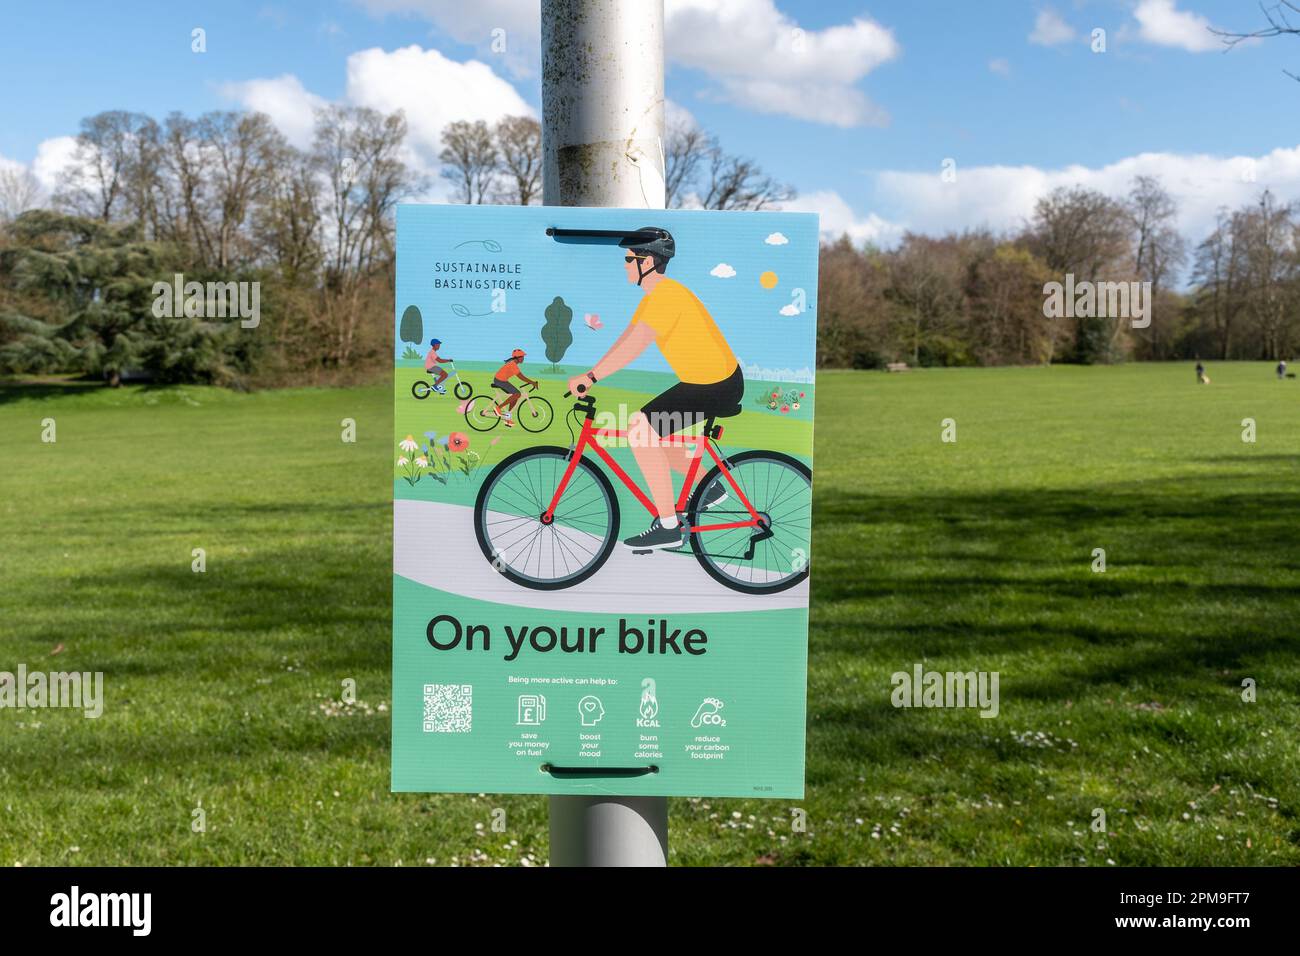 Sur votre panneau de vélo ou avis par Sustainable Basingstoke dans le War Memorial Park encourageant les gens à s'activer, Hampshire, Angleterre, Royaume-Uni Banque D'Images